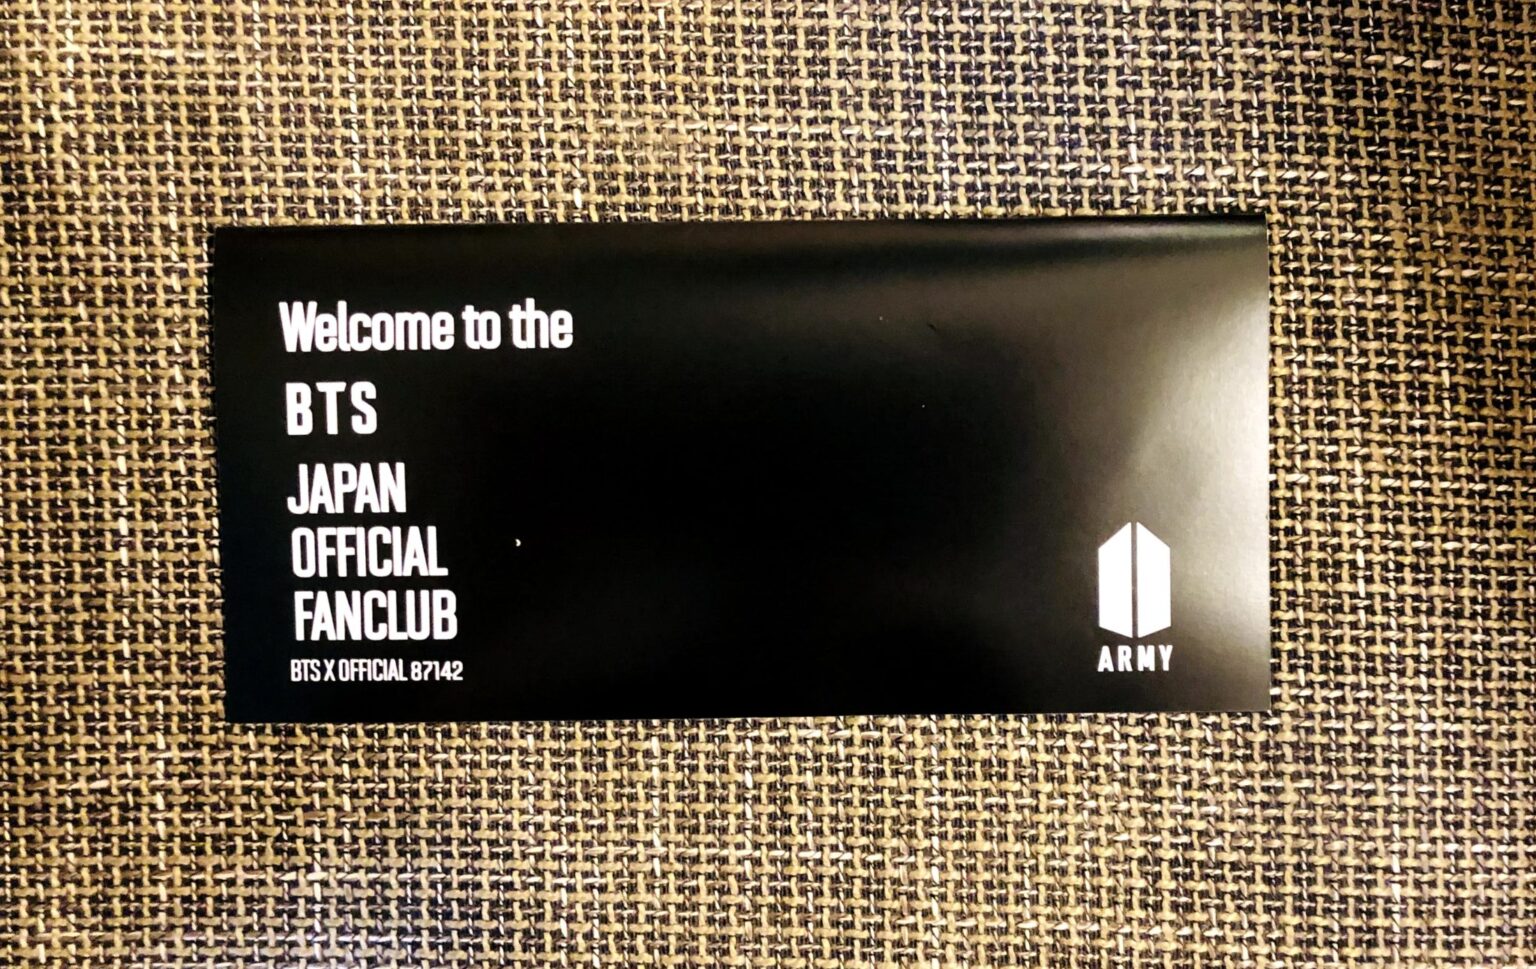 BTS日本公式ファンクラブの会員証